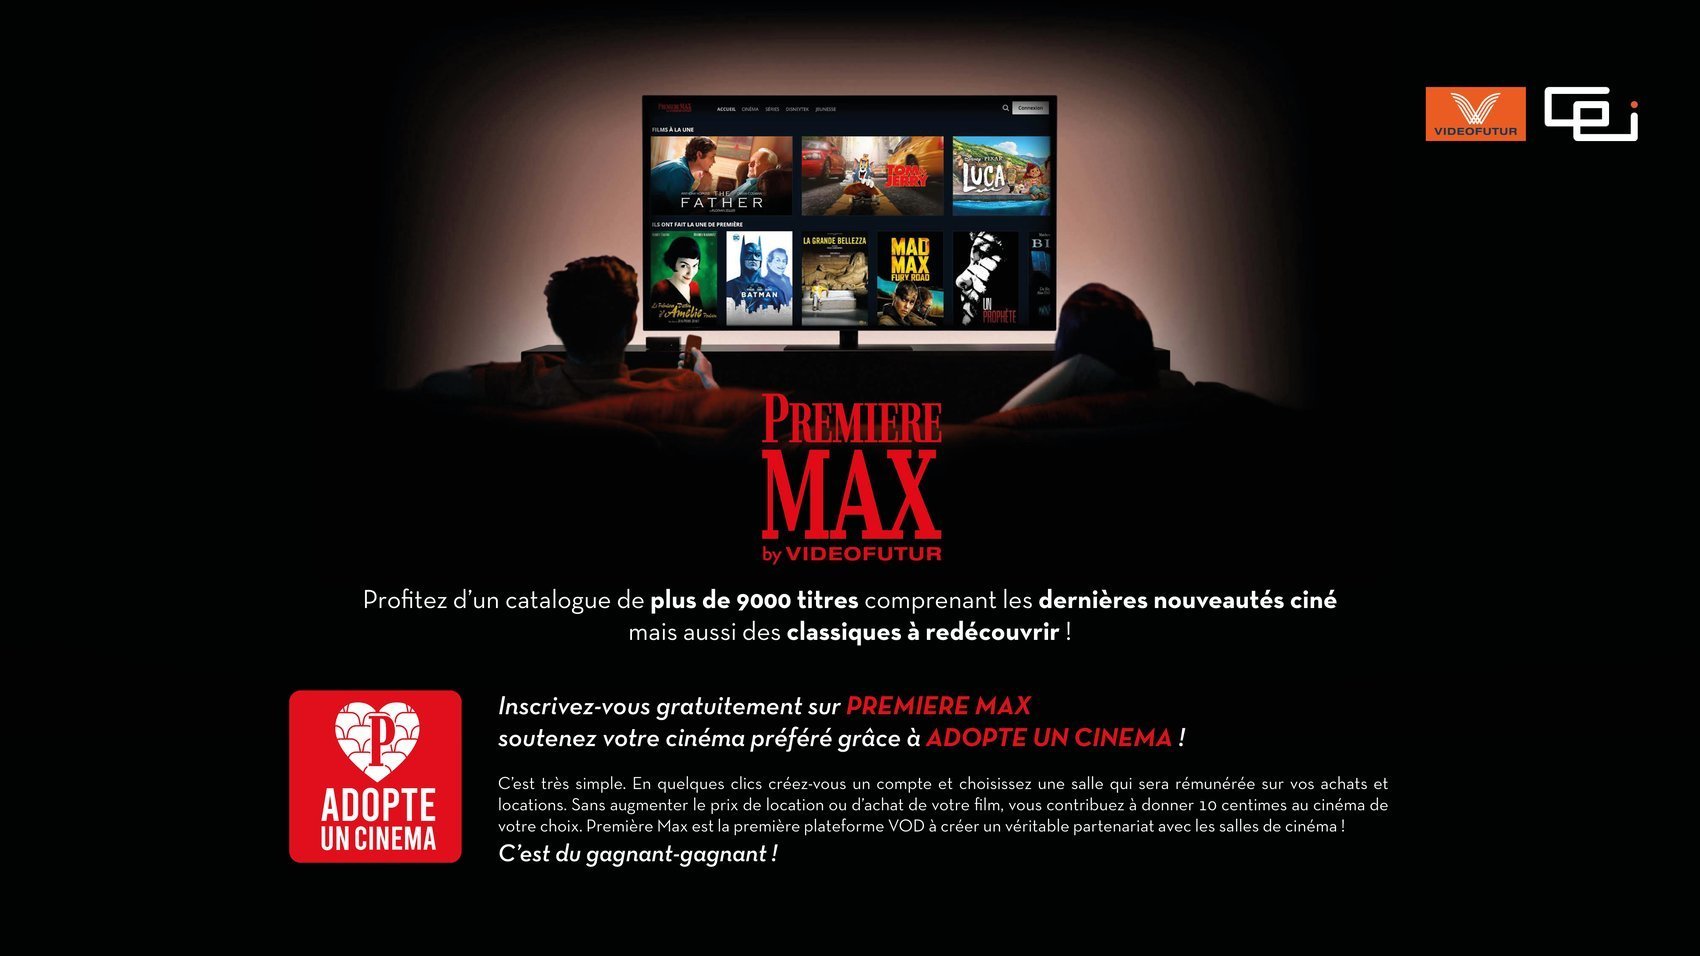 Premiere Max